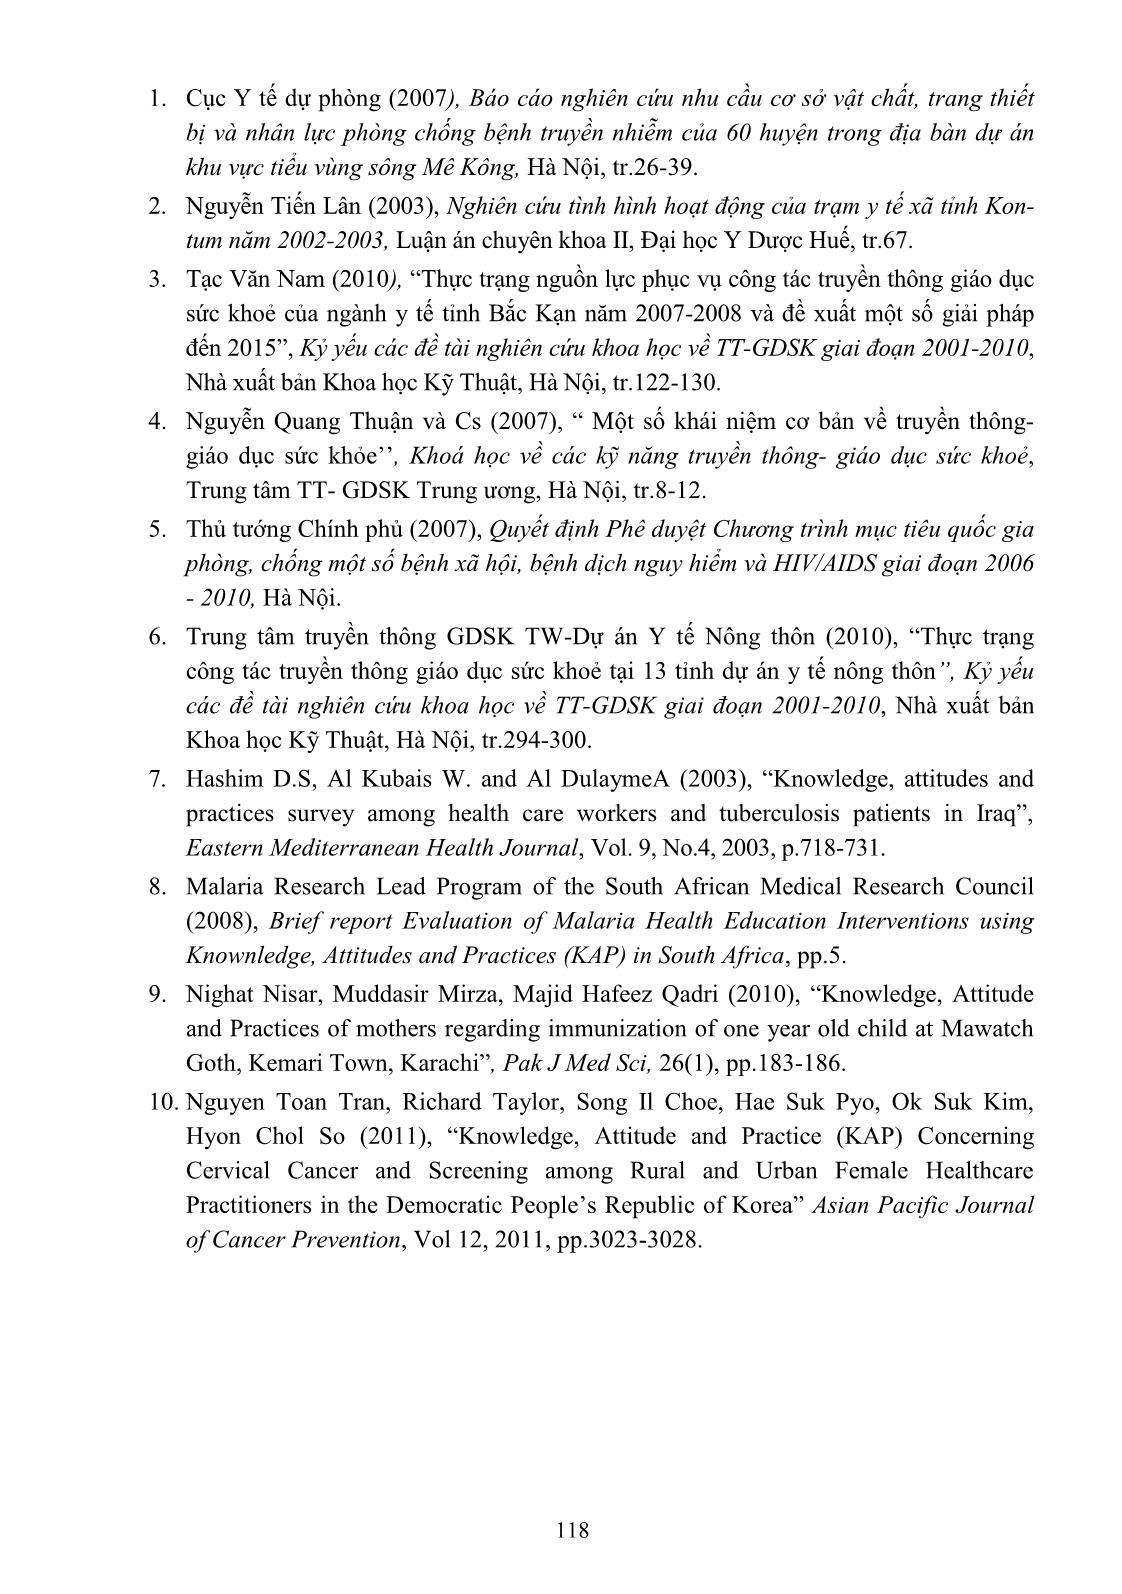 Khảo sát kiến thức, thái độ, thực hành về truyền thông giáo dục sức khoẻ của cán bộ y tế xã, phường - tỉnh Thừa Thiên Huế năm 2011 trang 10